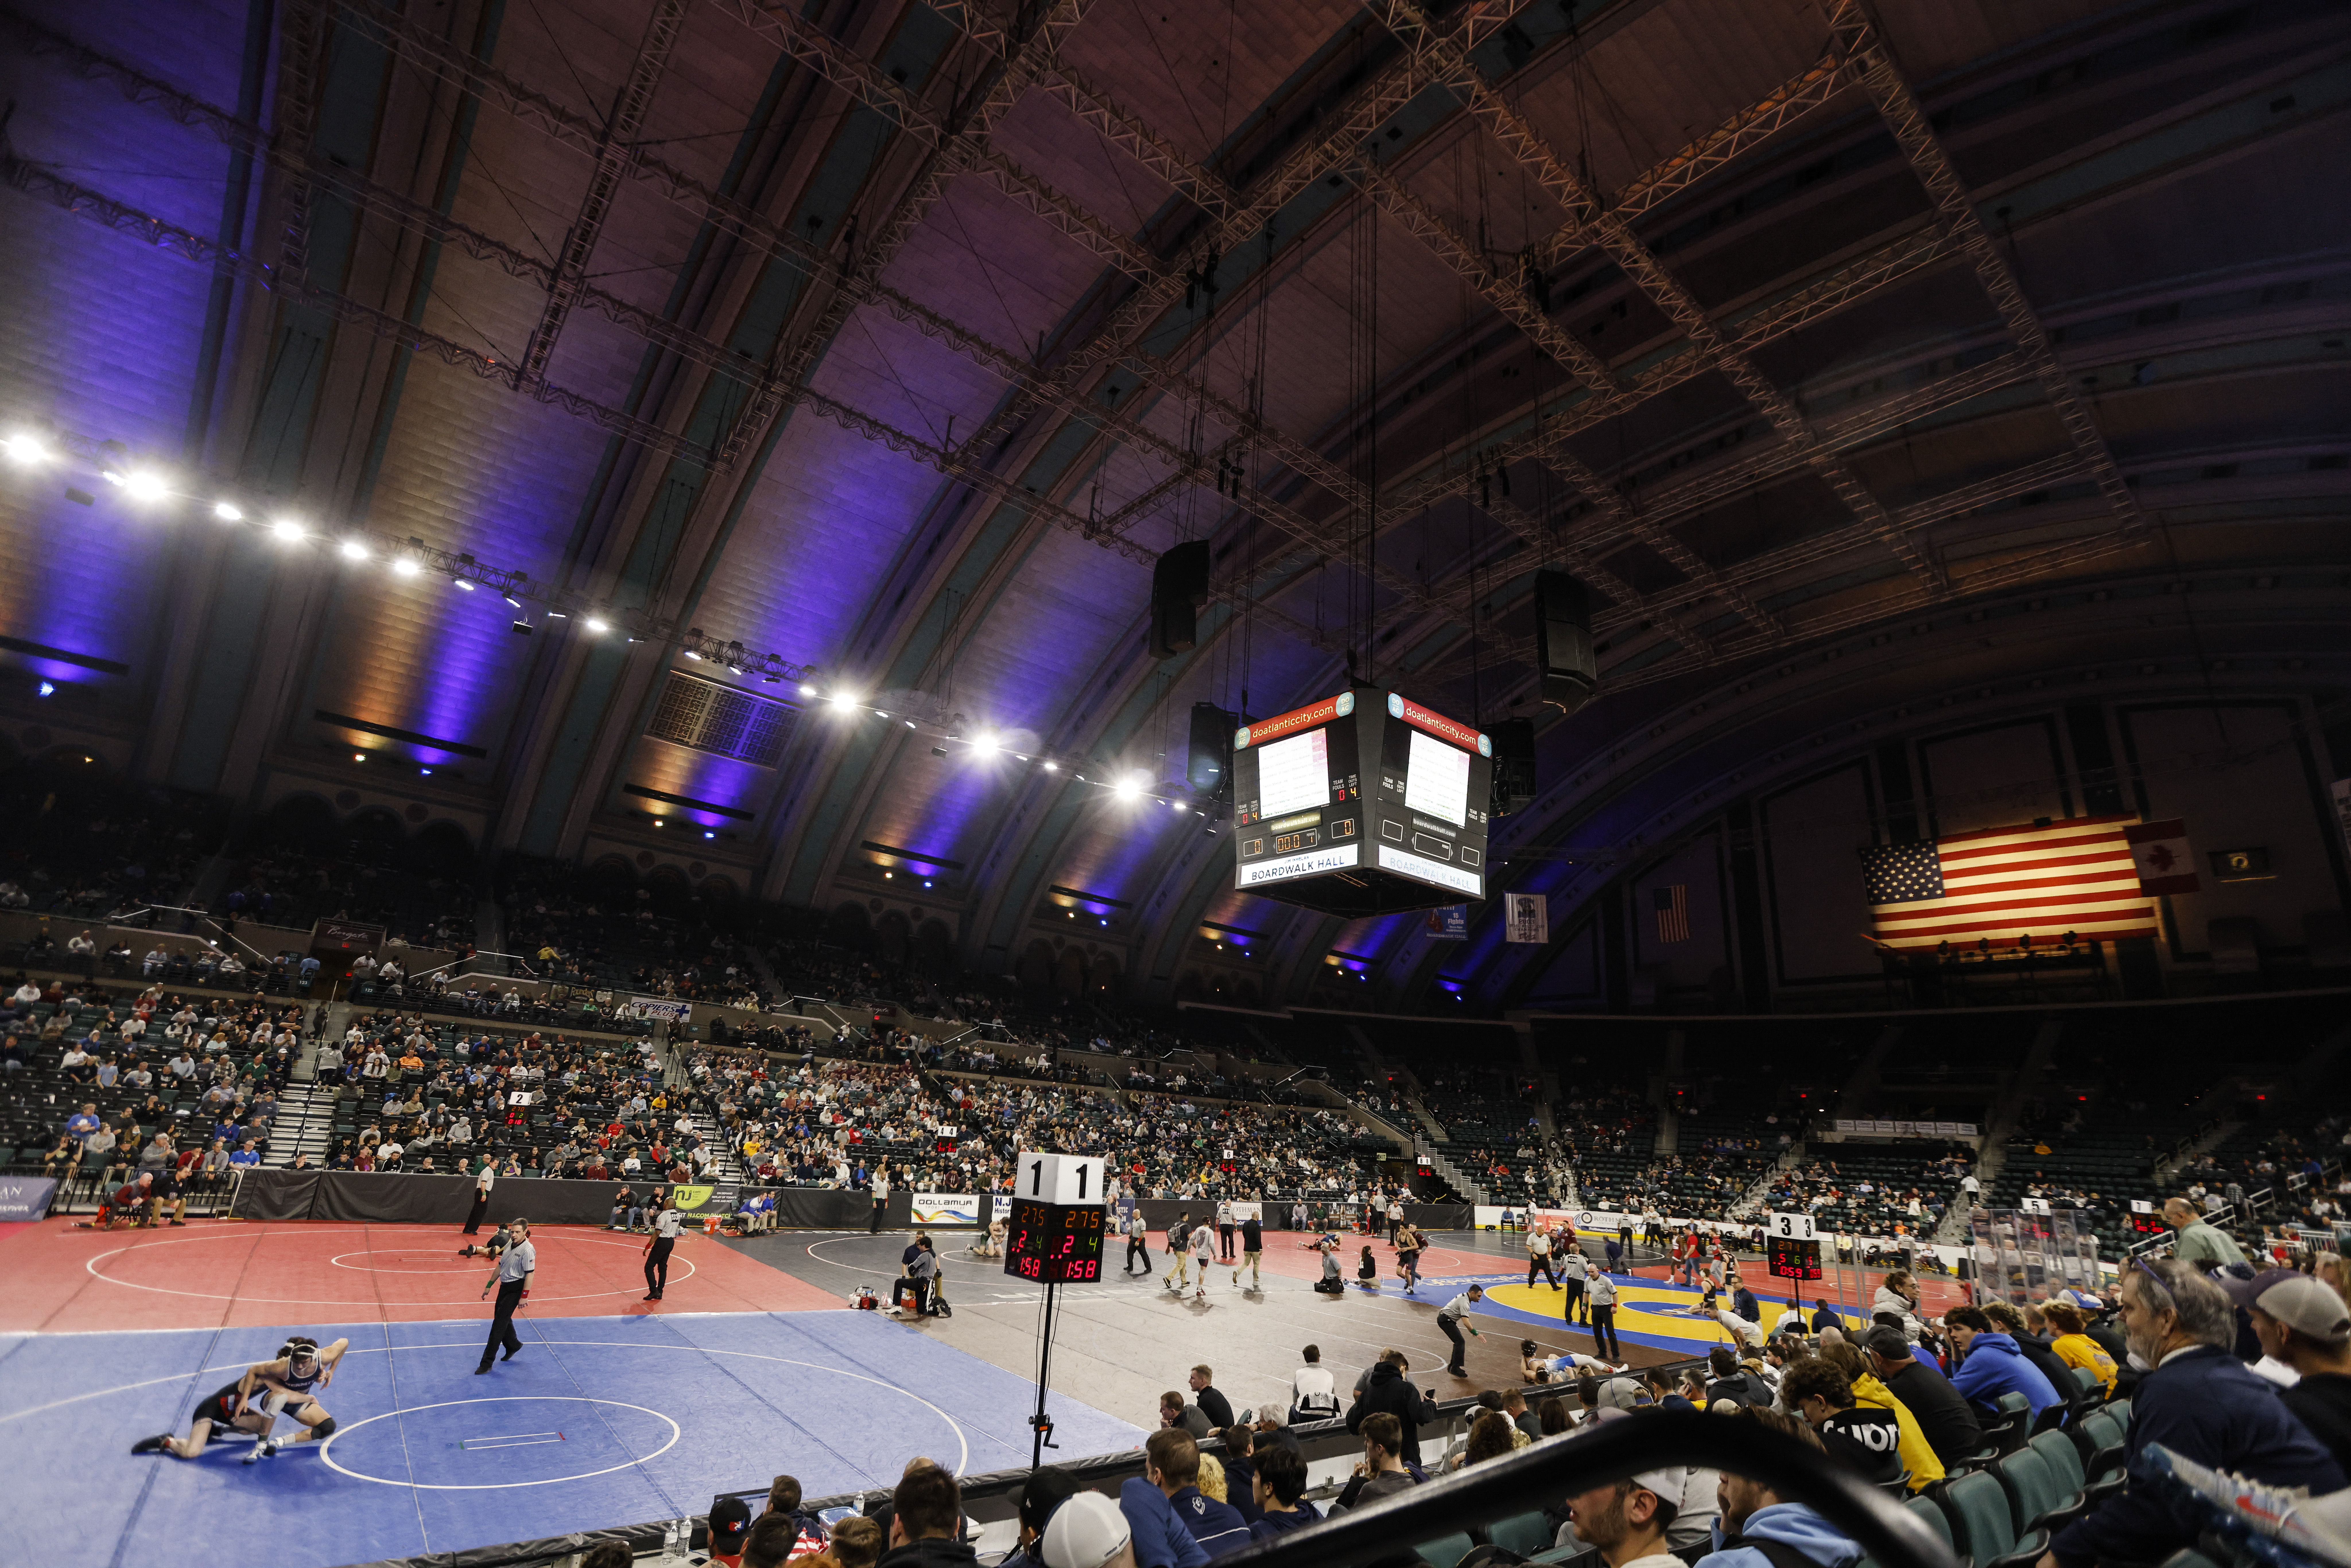 NJ high school wrestling: State championships start Thursday in AC